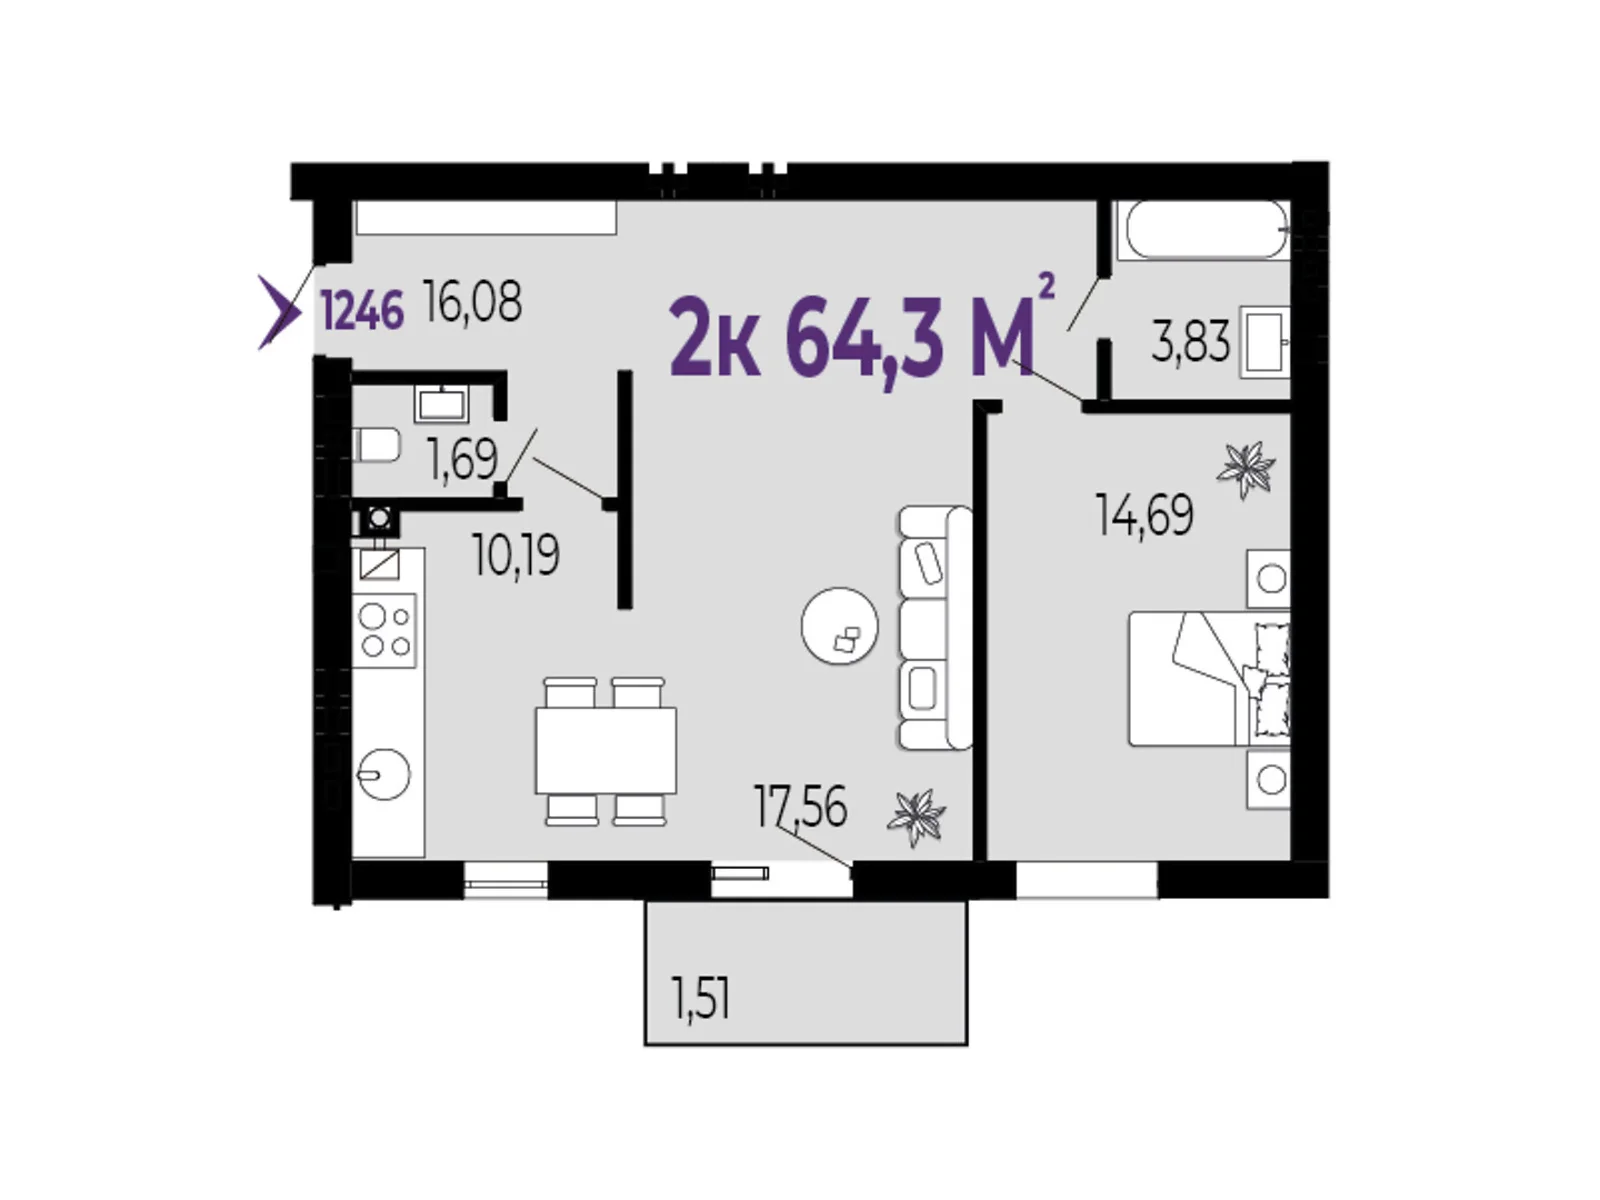 Продається 2-кімнатна квартира 64.3 кв. м у Крихівці, вул. 24 Серпня - фото 1